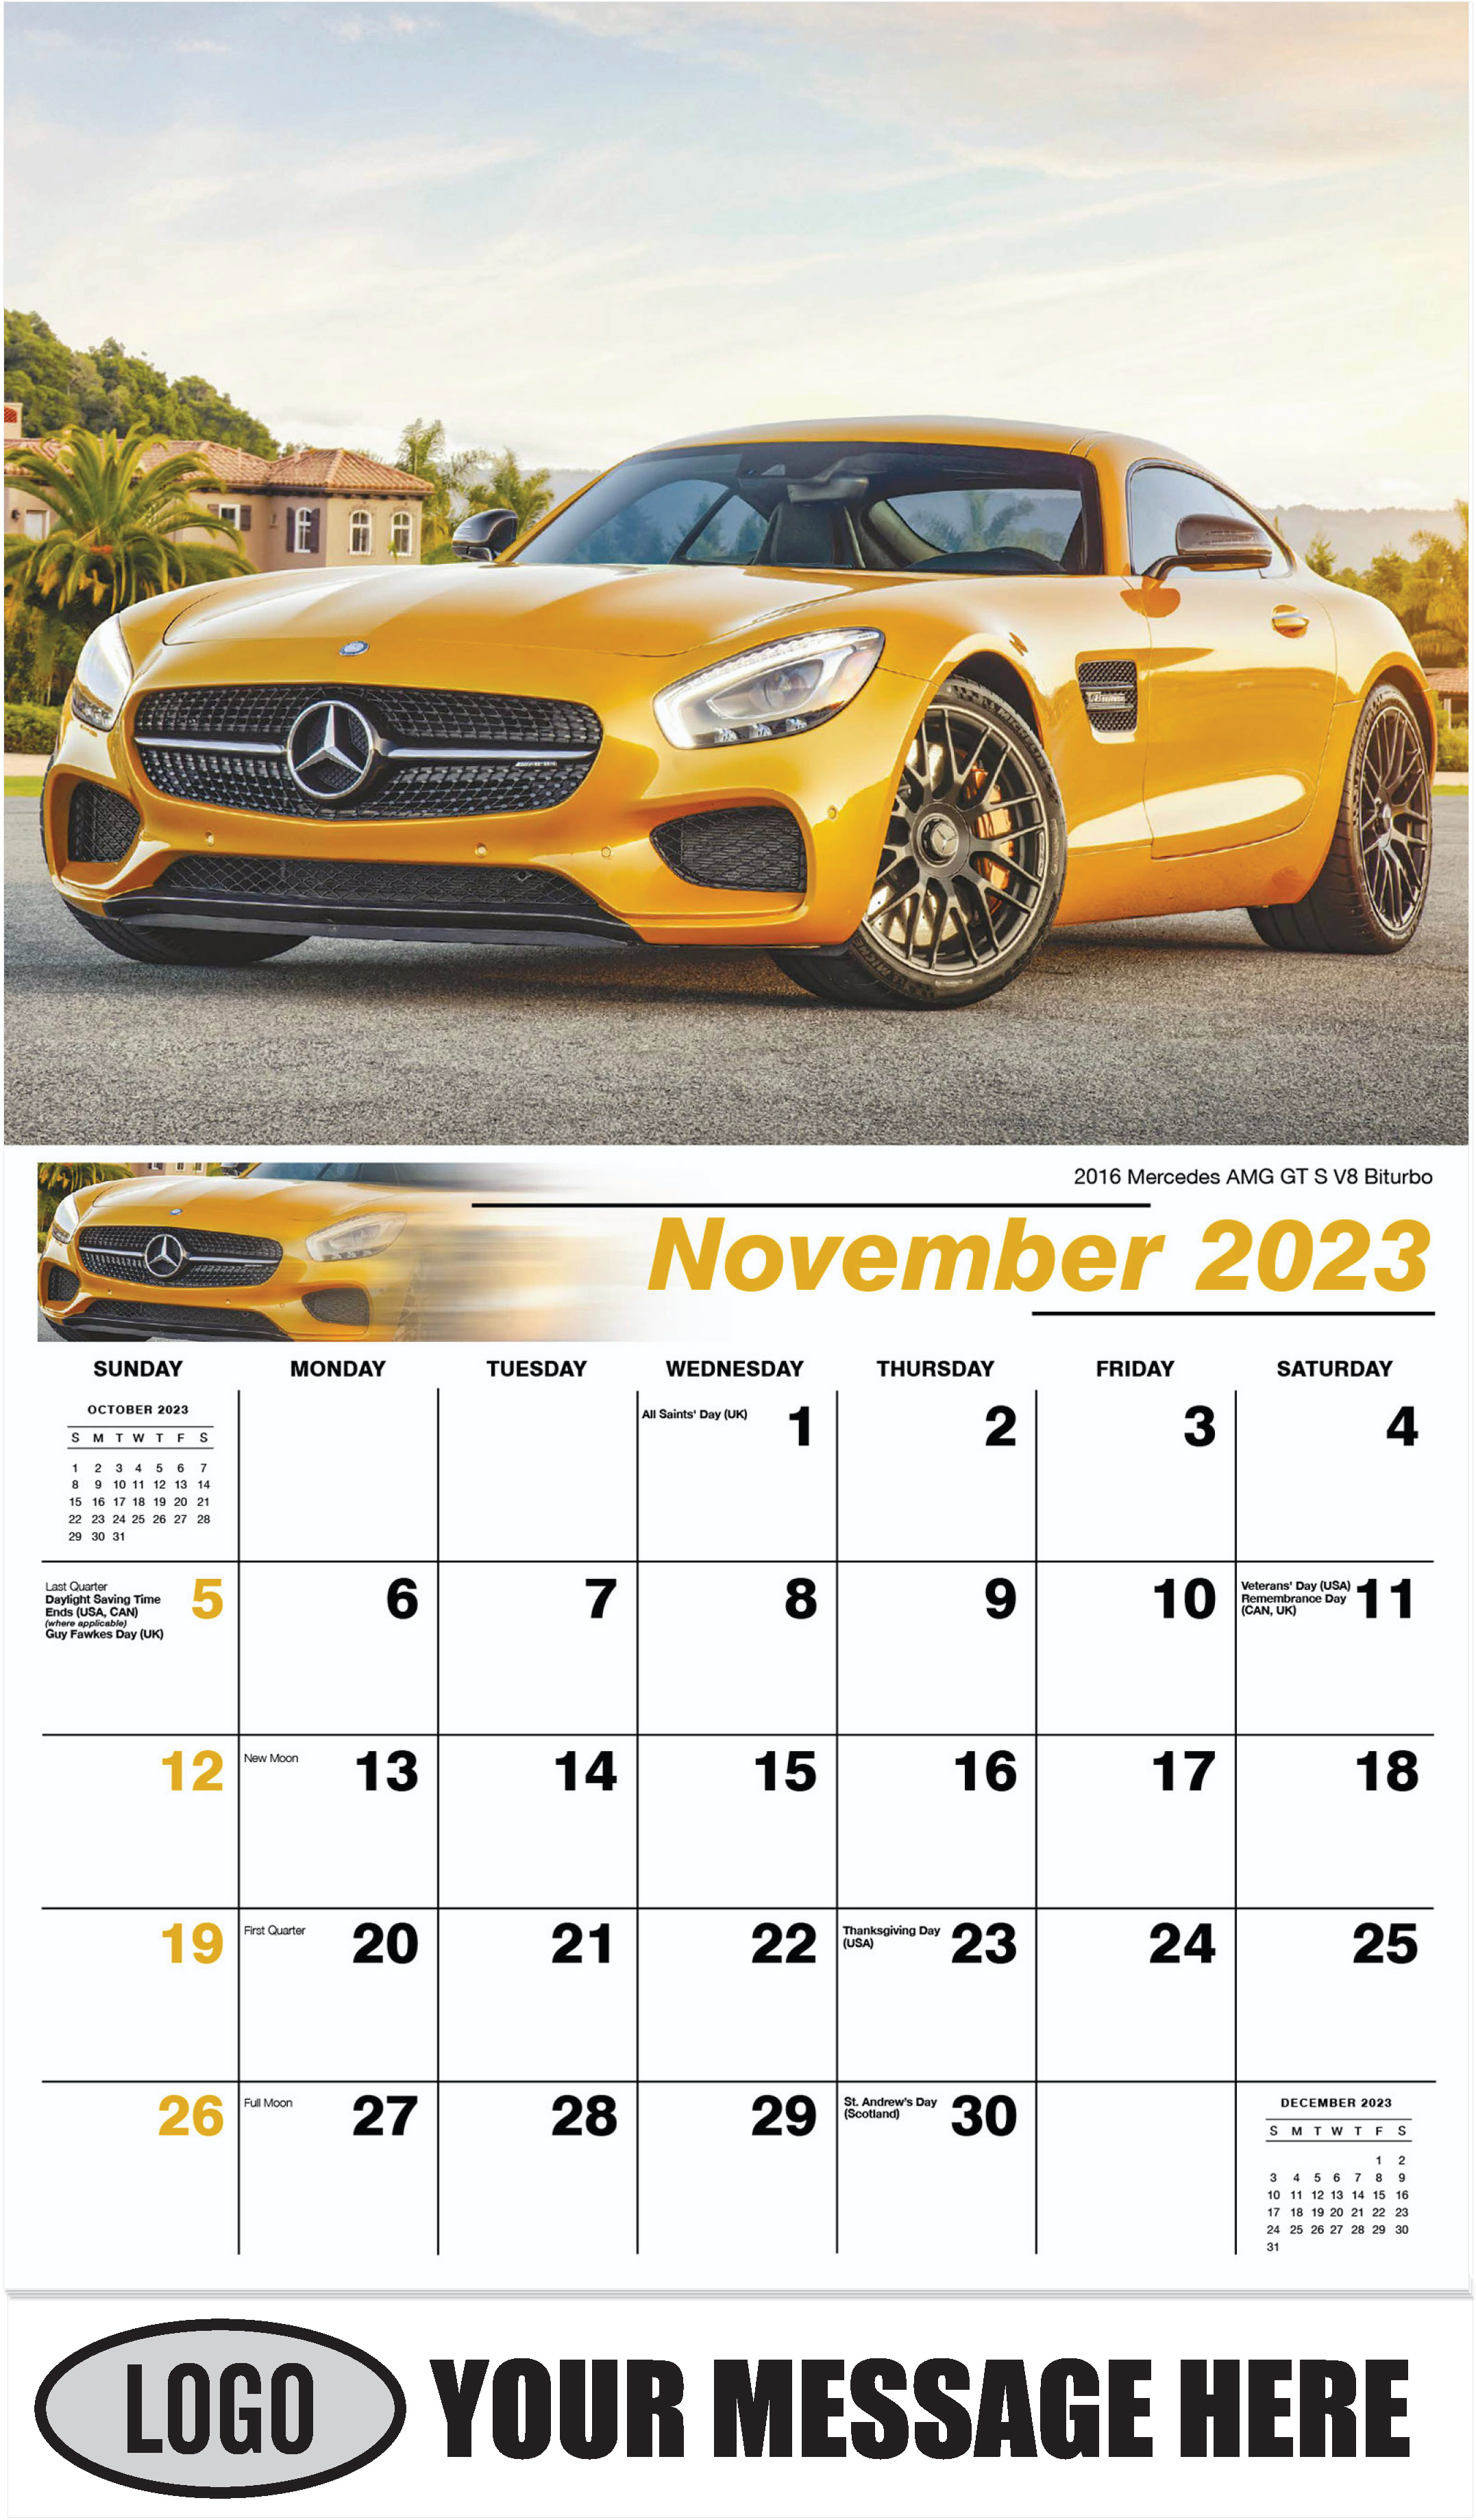 2016 Mercedes AMG GT S V8 Biturbo - November - Exotic Cars 2023 Promotional Calendar